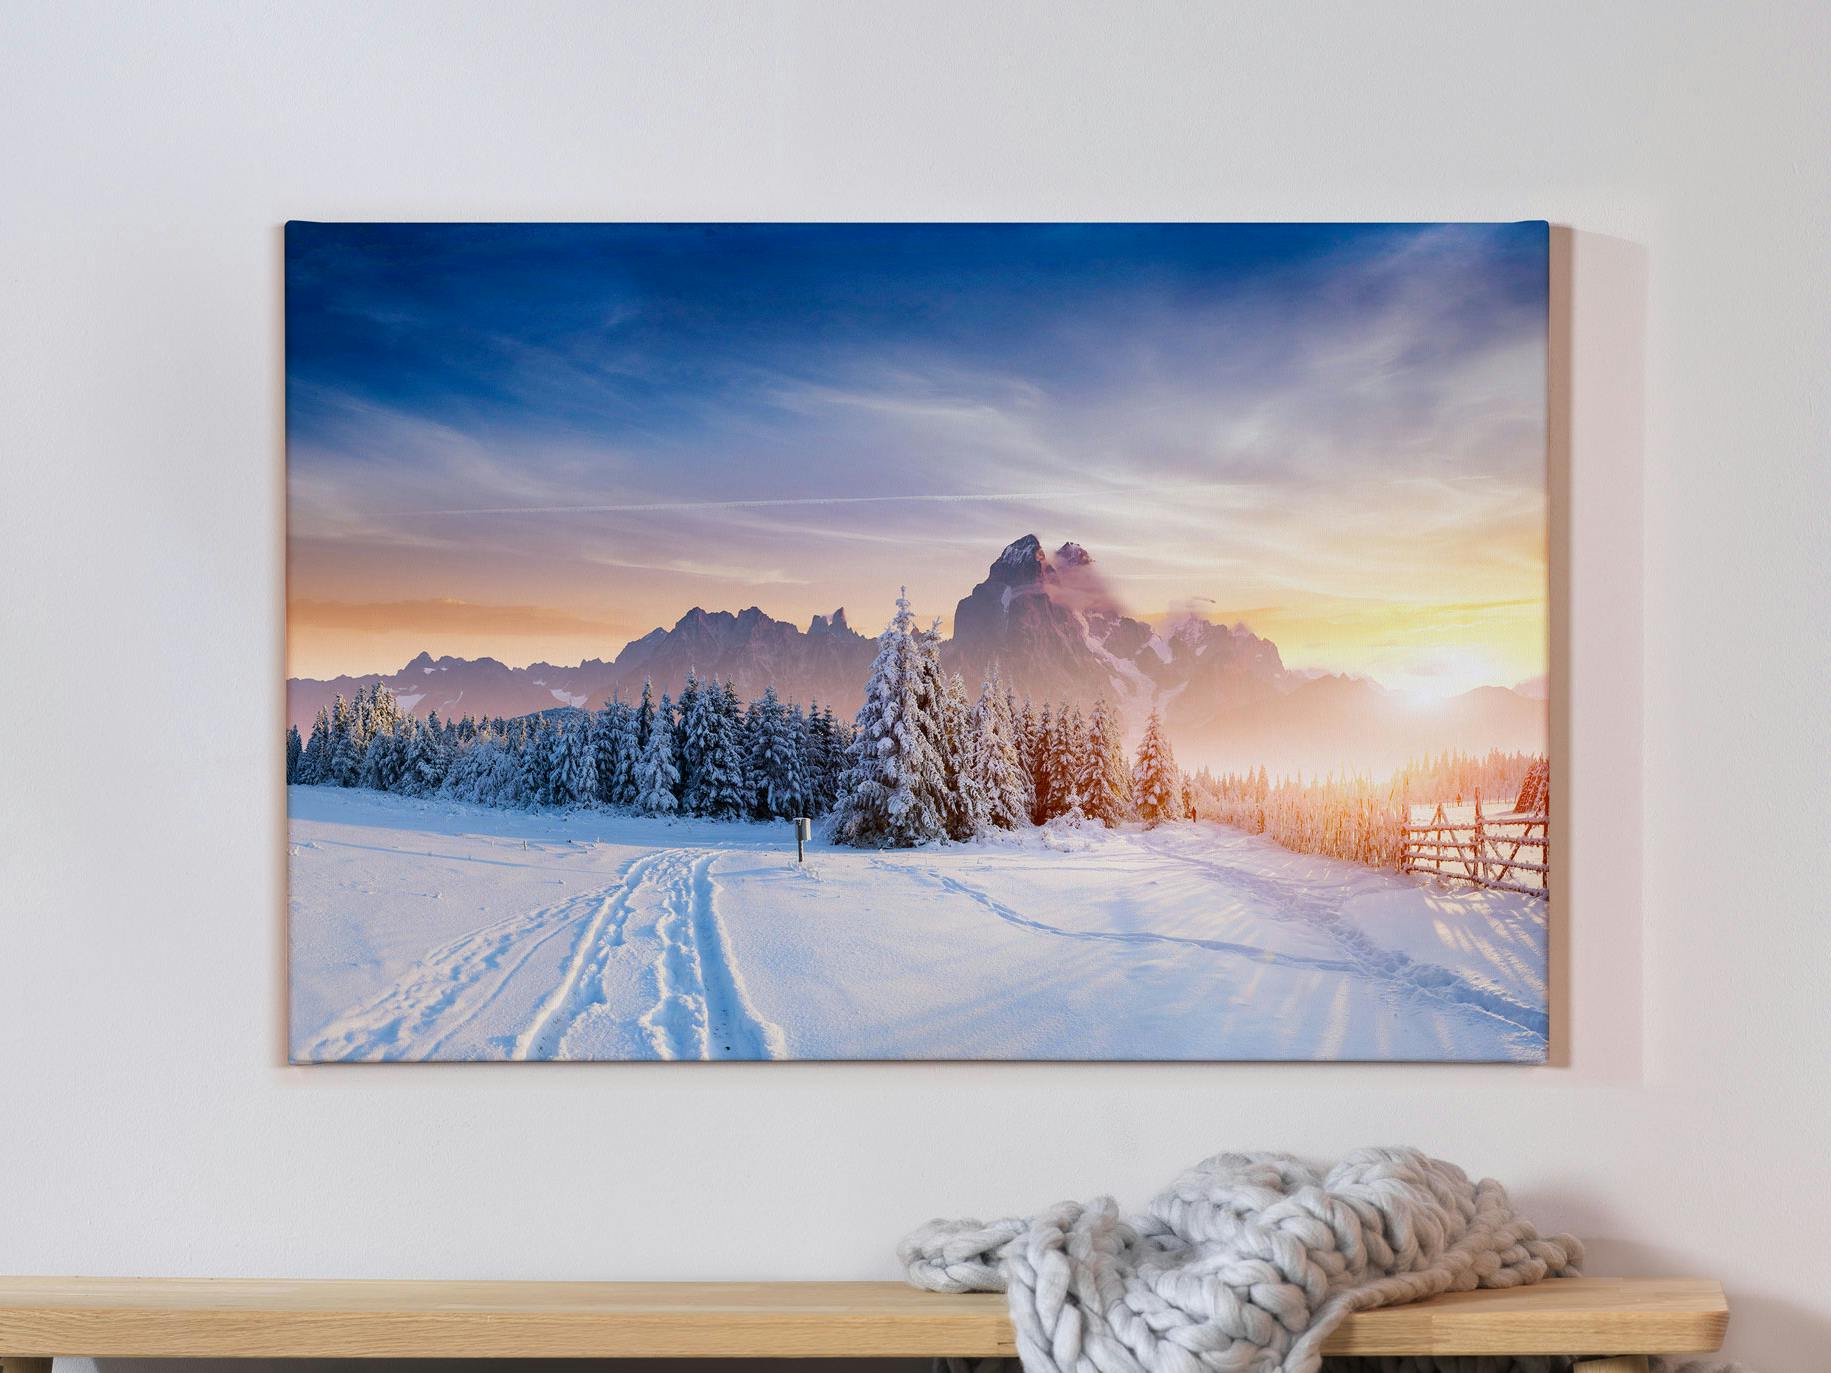 Toile photo avec photo de paysage hivernal sur un mur gris